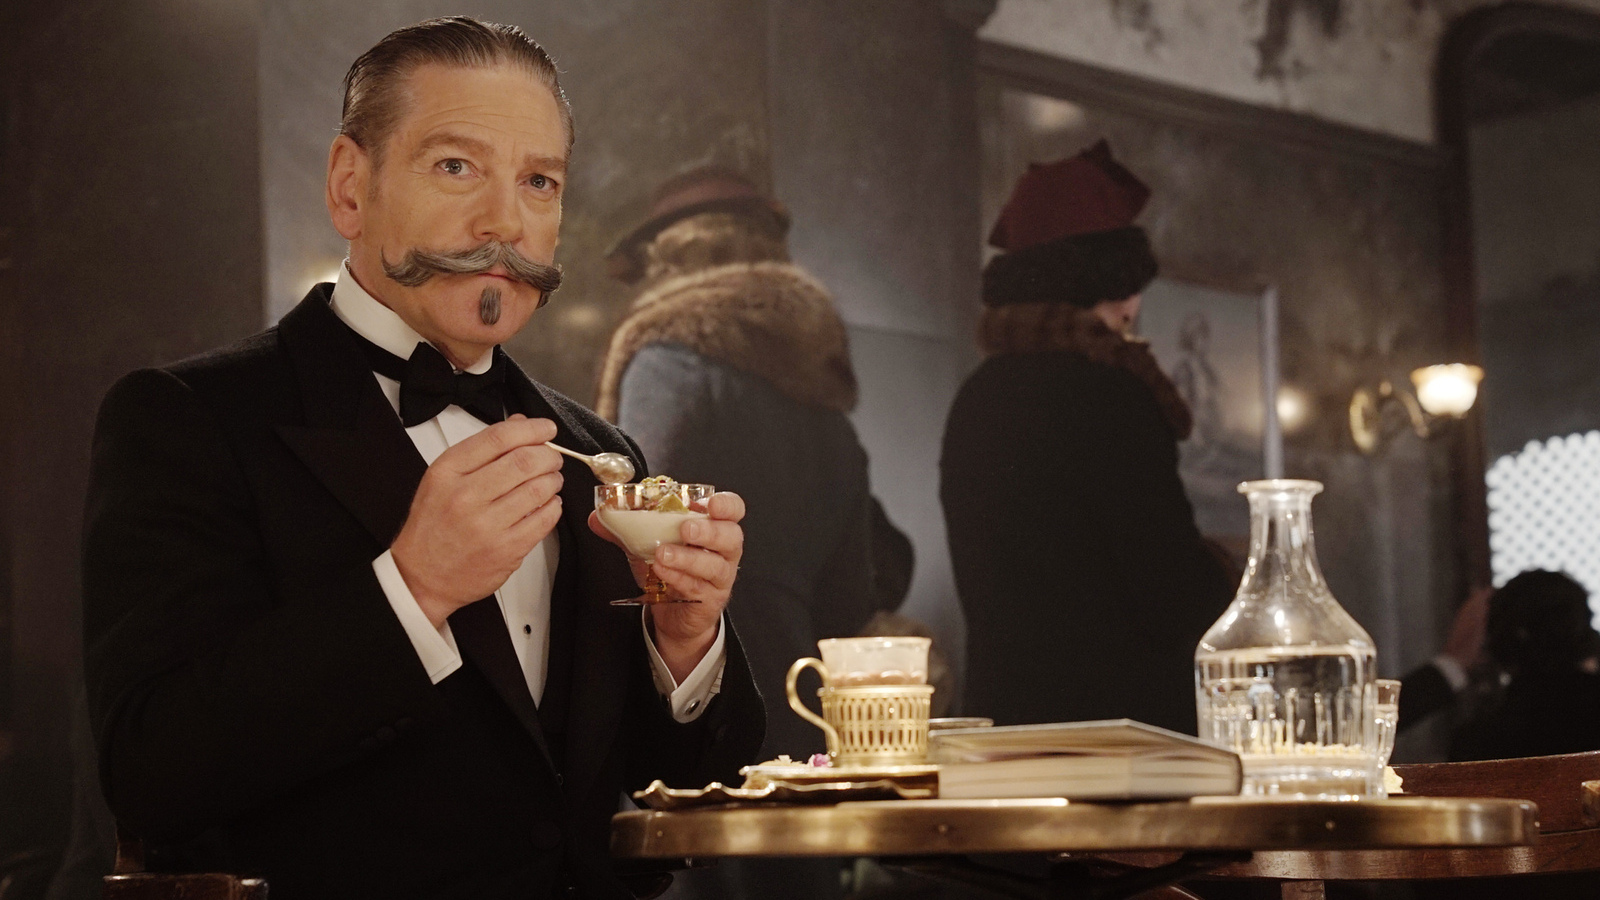 Assassinio sull'Orient Express stasera su Rai 3: la trama e il cast del film giallo tratto da Agatha Christie